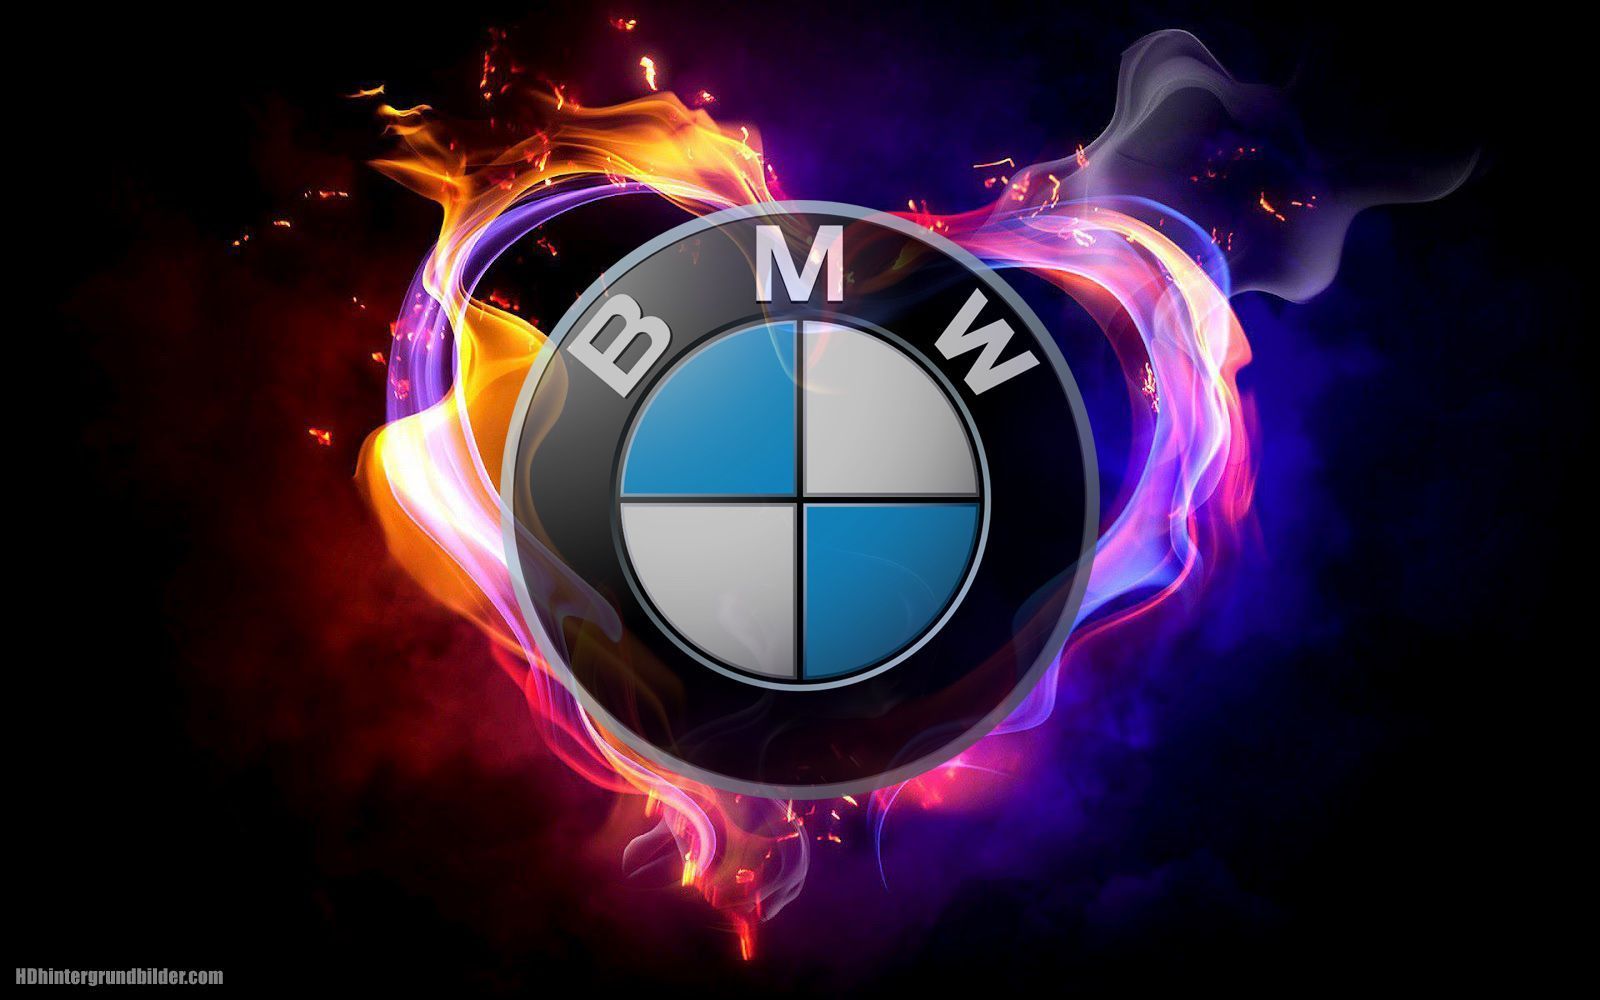  BMW Hintergrundbild 1600x1000. Schönen Logo BMW hintergrundbilder, BMW wallpaper und fotos in HD qualität. 아이폰 바탕화면, 멋진 자동차, 자동차